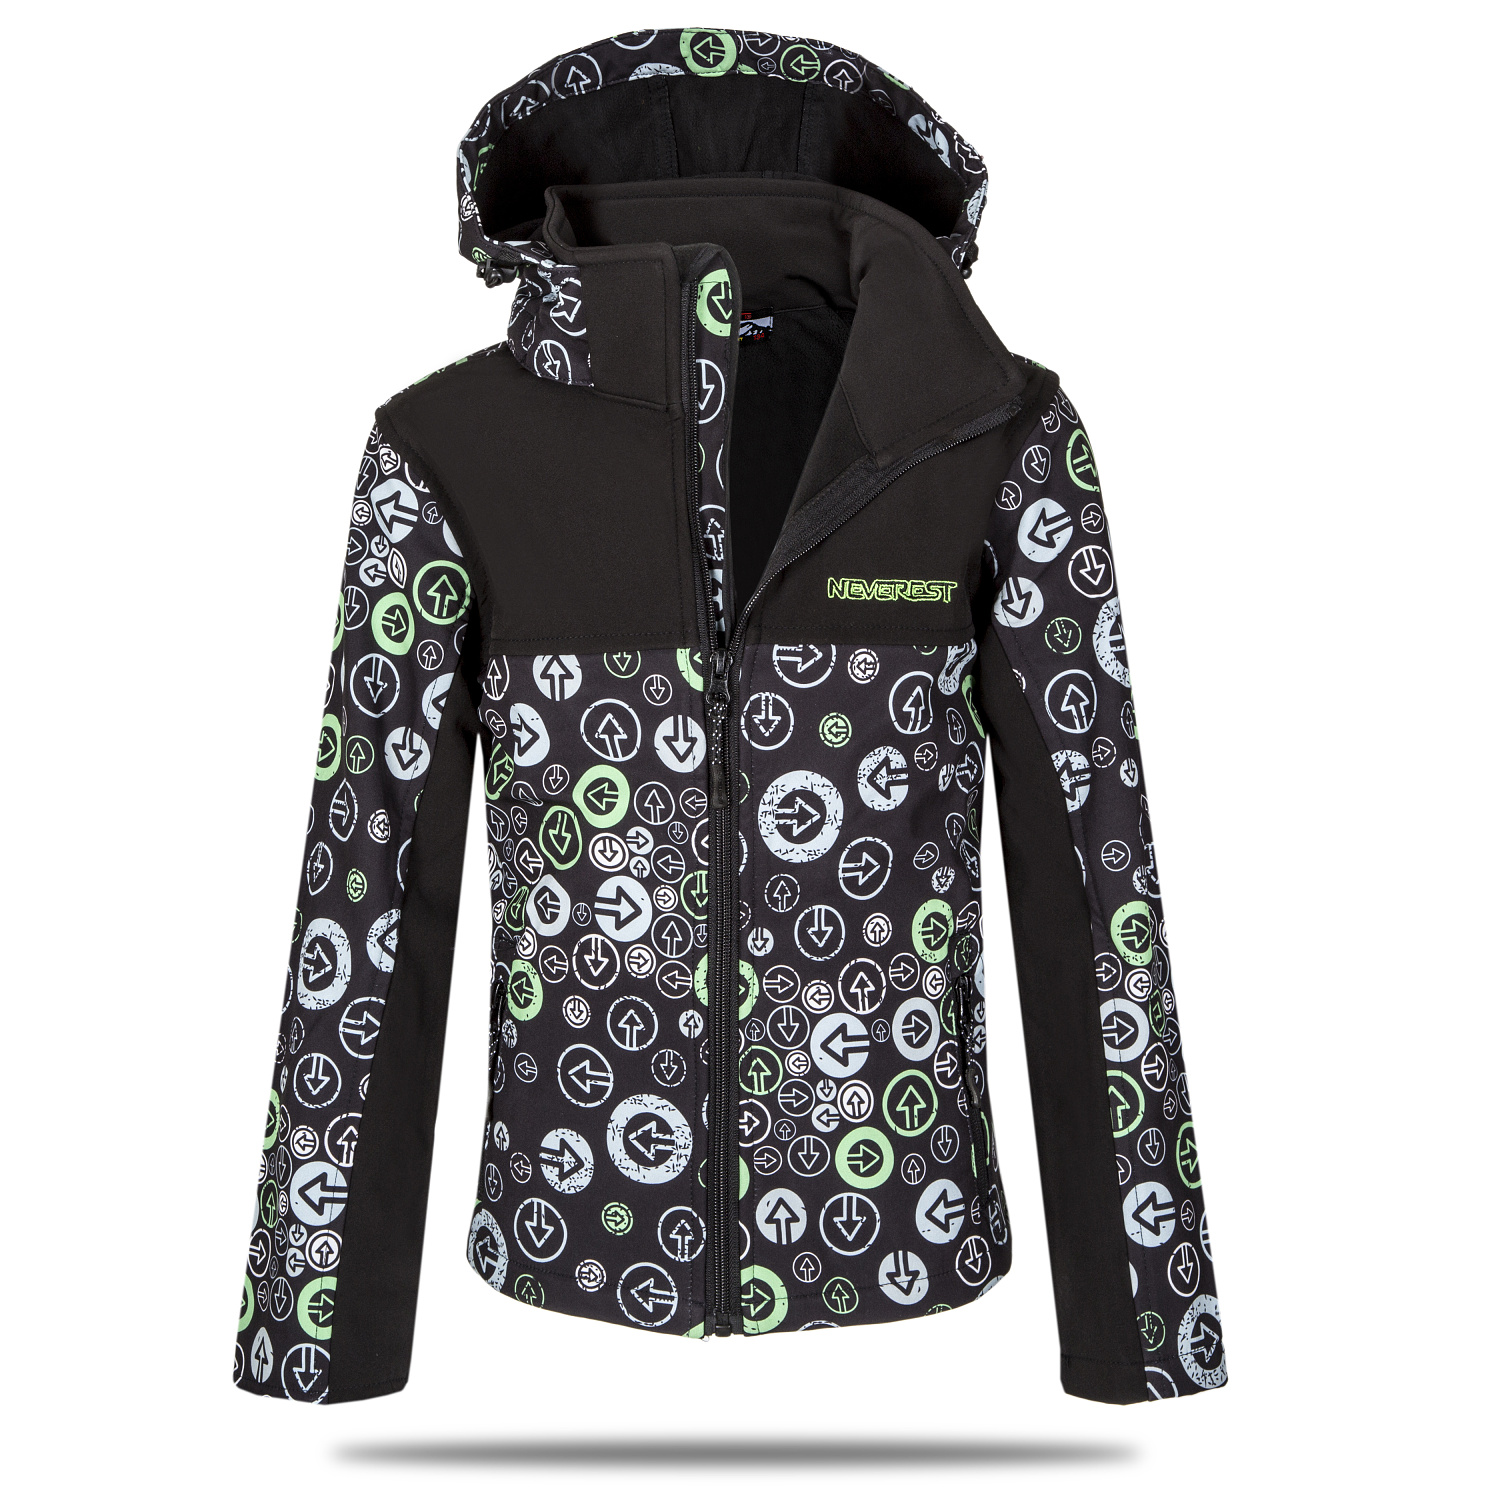 Chlapecká softshellová bunda - NEVEREST I-6296cc, černo-zelená Barva: Černá, Velikost: 110